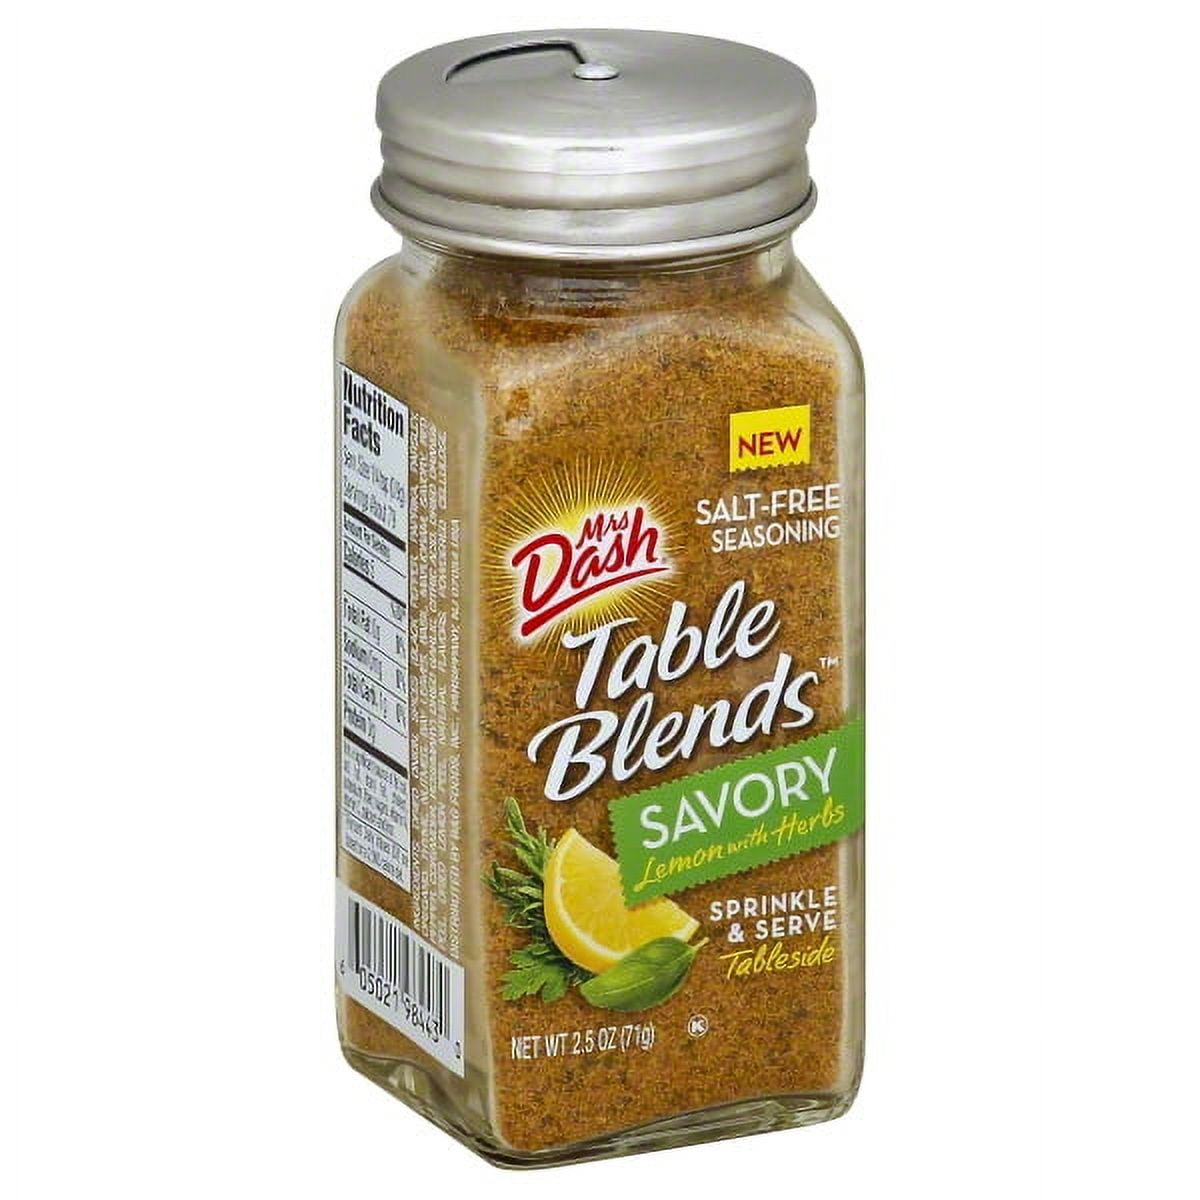 Mrs. Dash Lemon Pepper Salt-Free Seasoning, Pack of 2